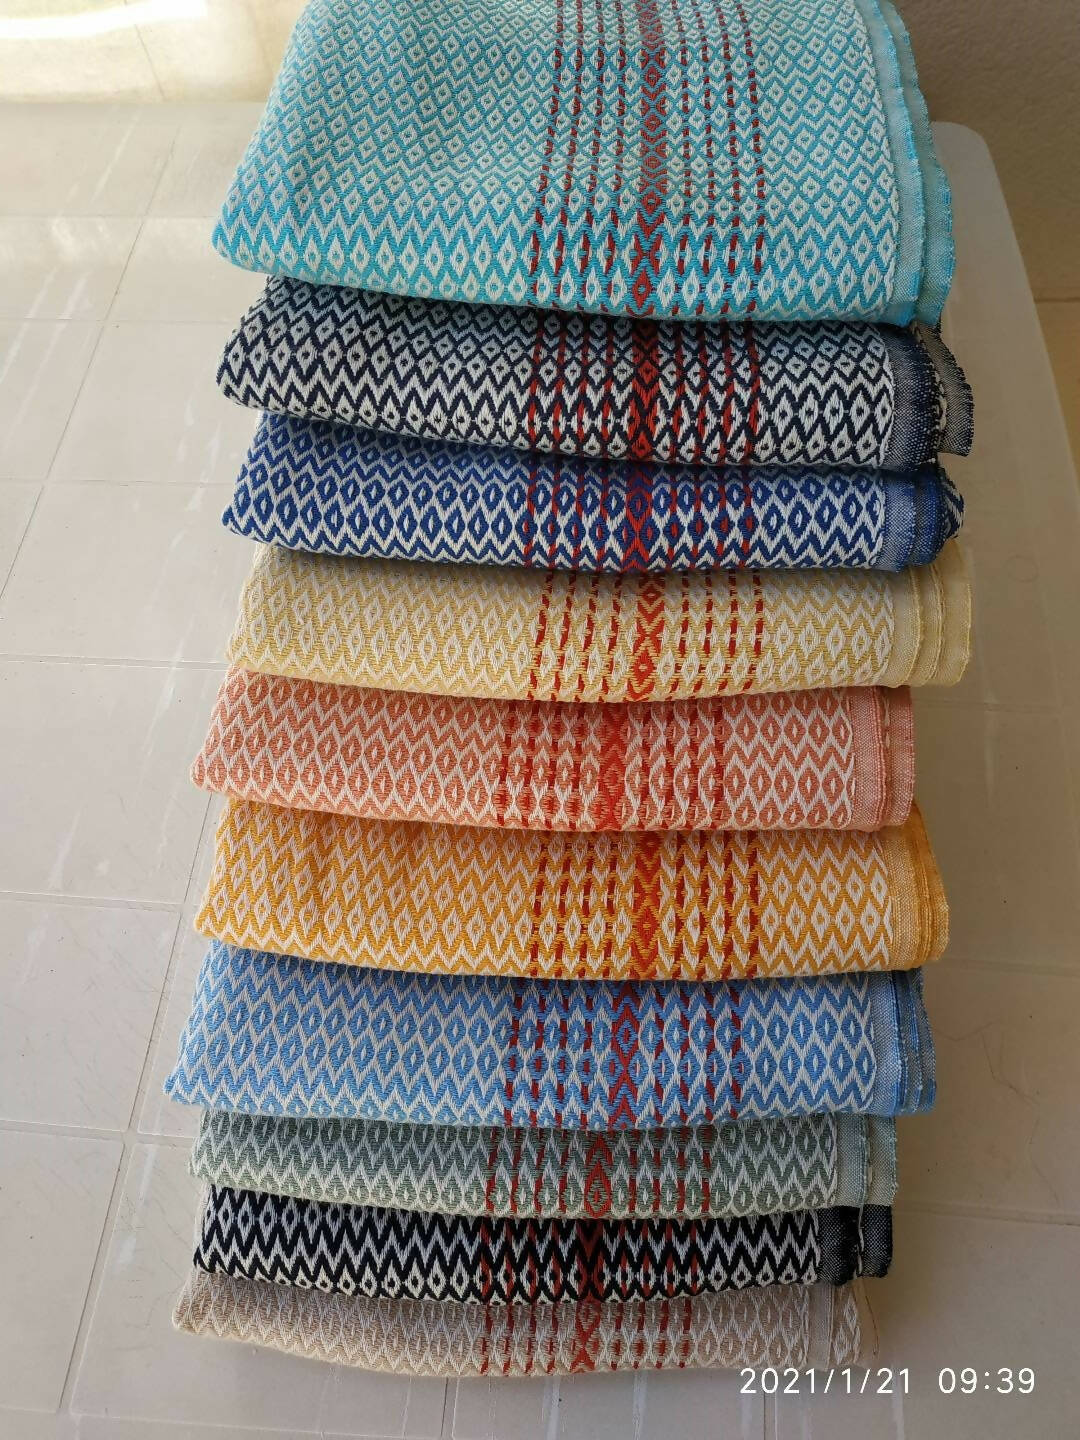 toallas de colores